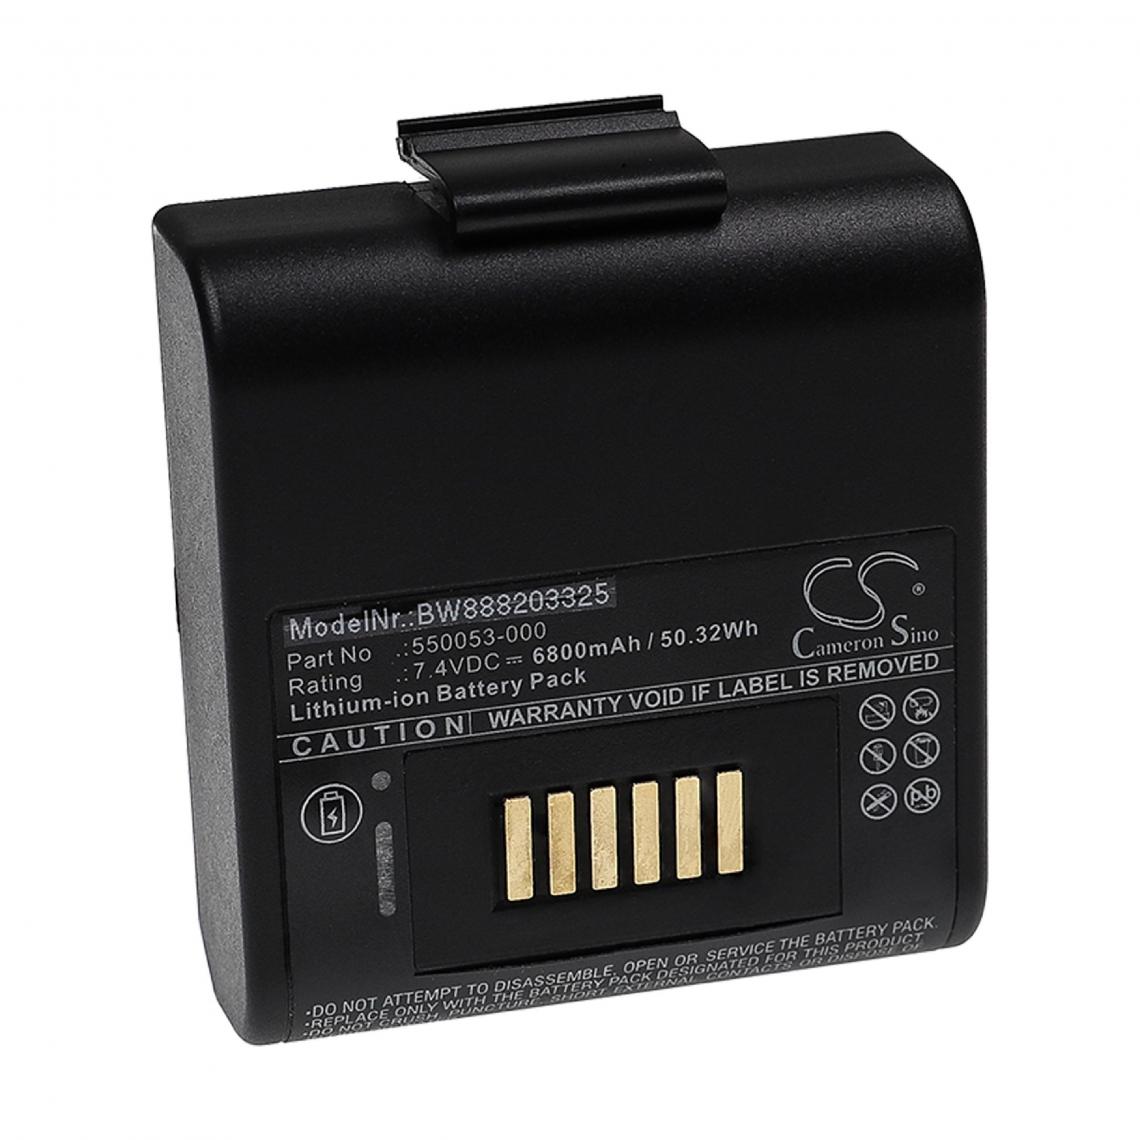 Vhbw - vhbw Batterie compatible avec ONeil RP4 imprimante, scanner, imprimante d'étiquettes (6800mAh, 7,4V, Li-ion) - Imprimante Jet d'encre